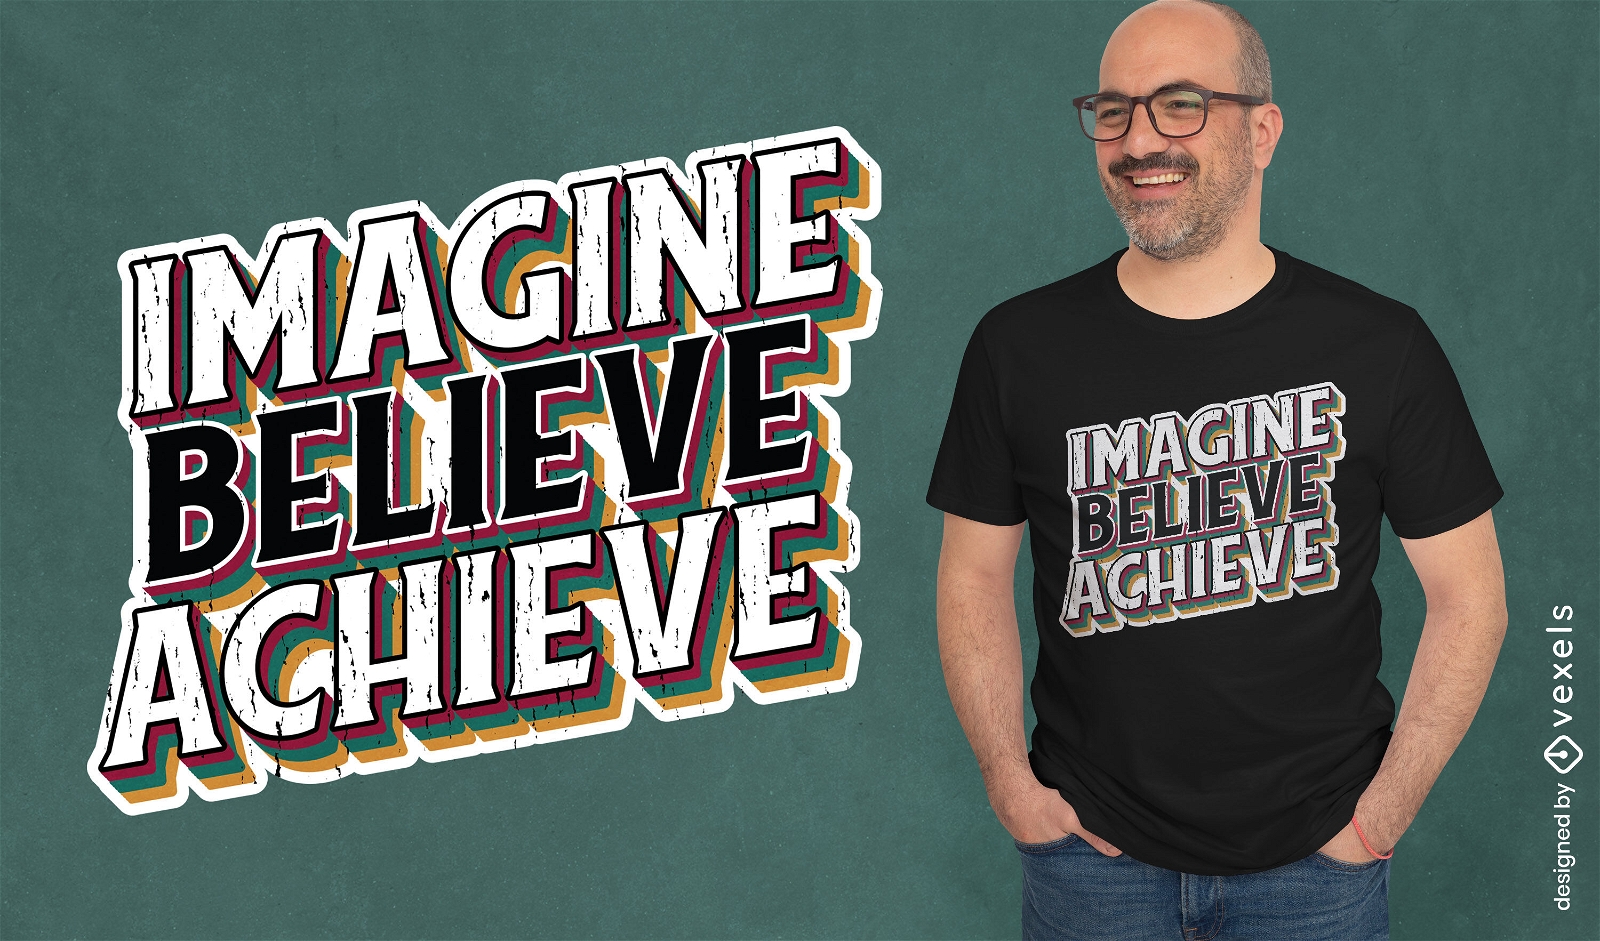 Acredite no design de camiseta com citação motivacional